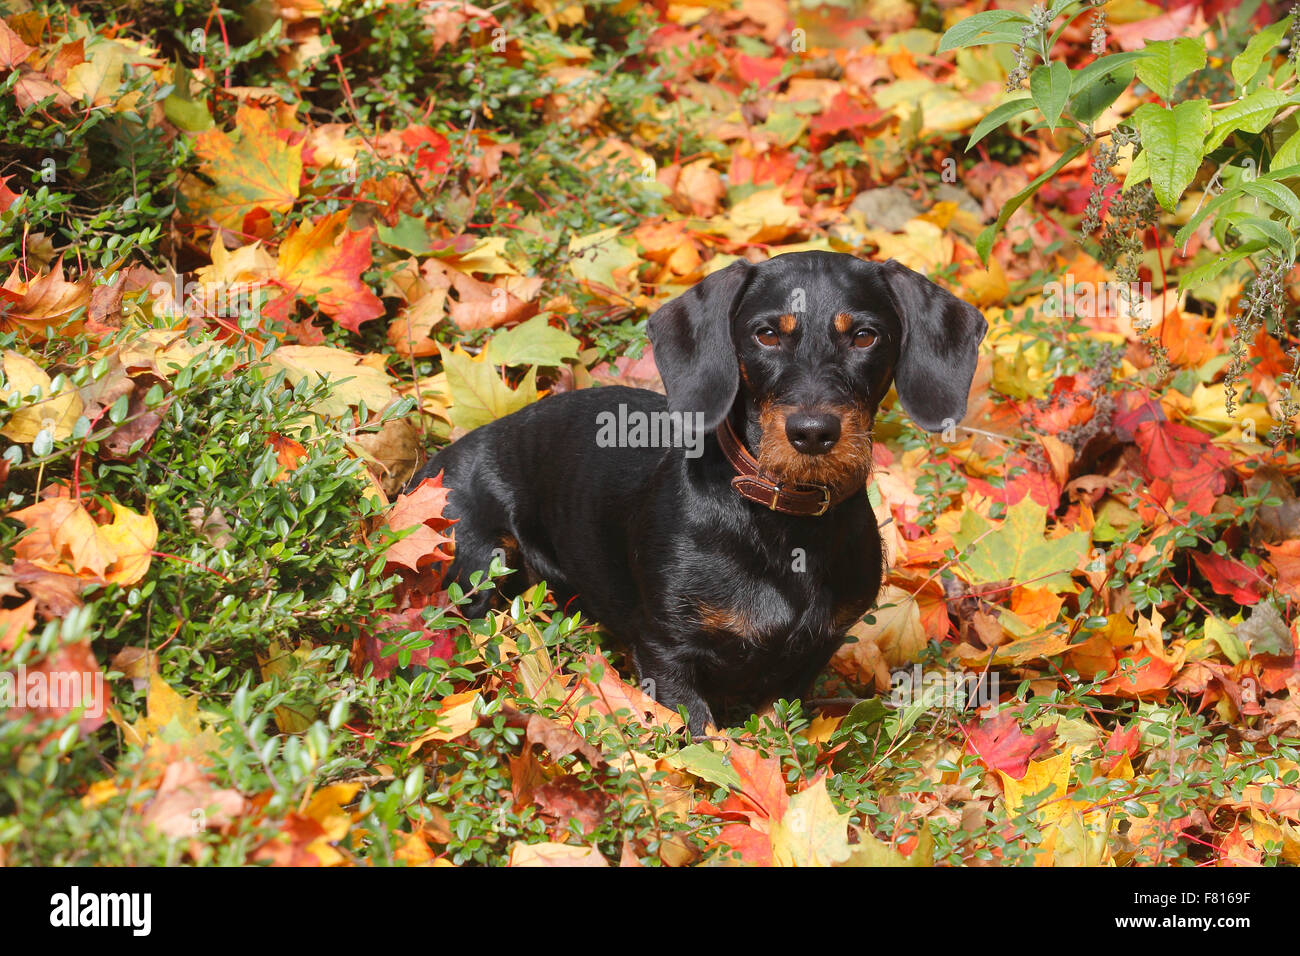 dachshund in autumn foliage Stock Photo